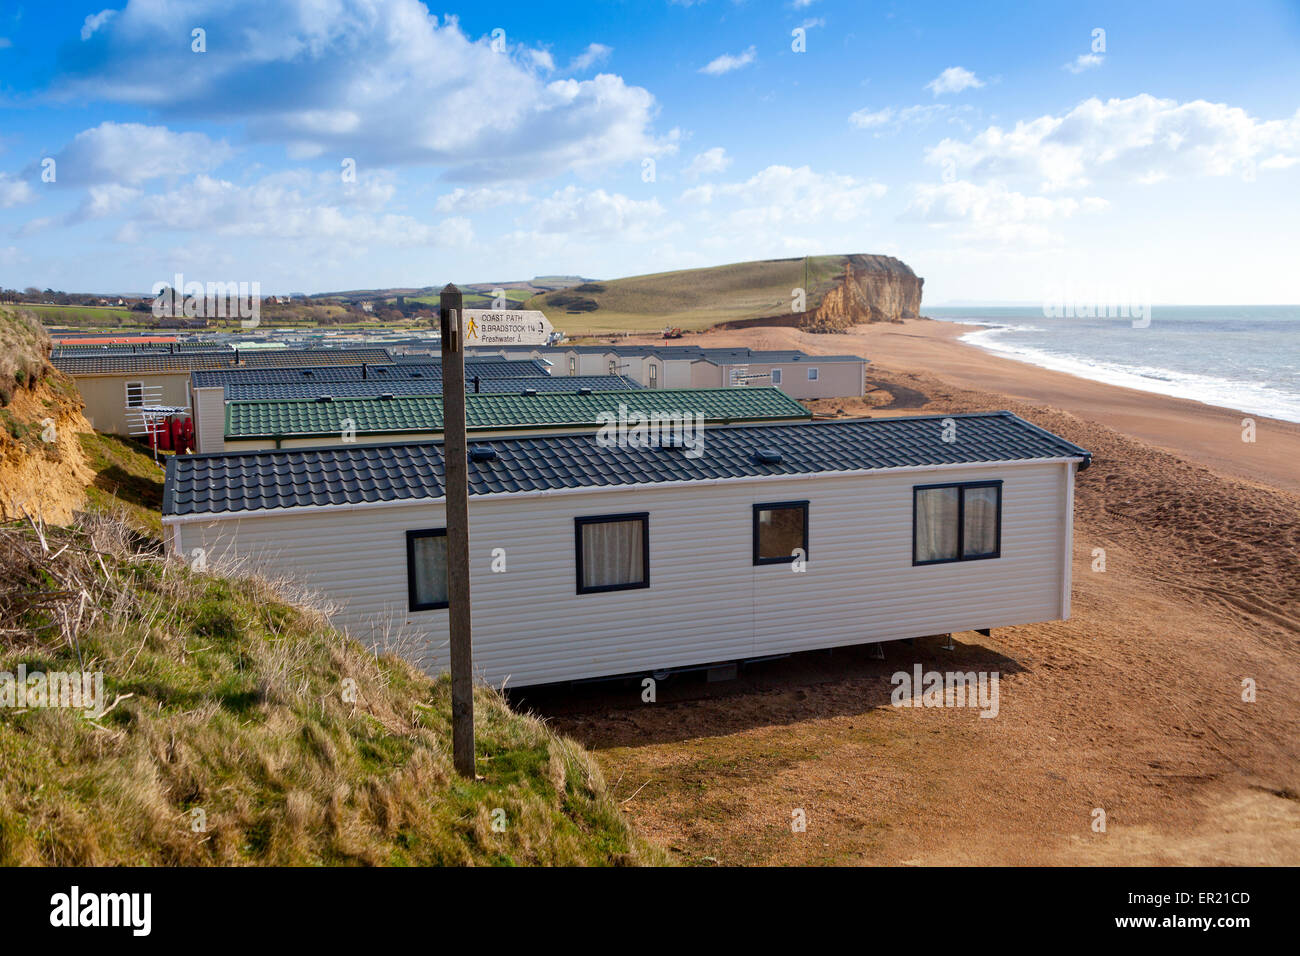 Un immense camping site empiète sur la plage près de Cliff Burton sur la côte jurassique, Dorset, England, UK Banque D'Images